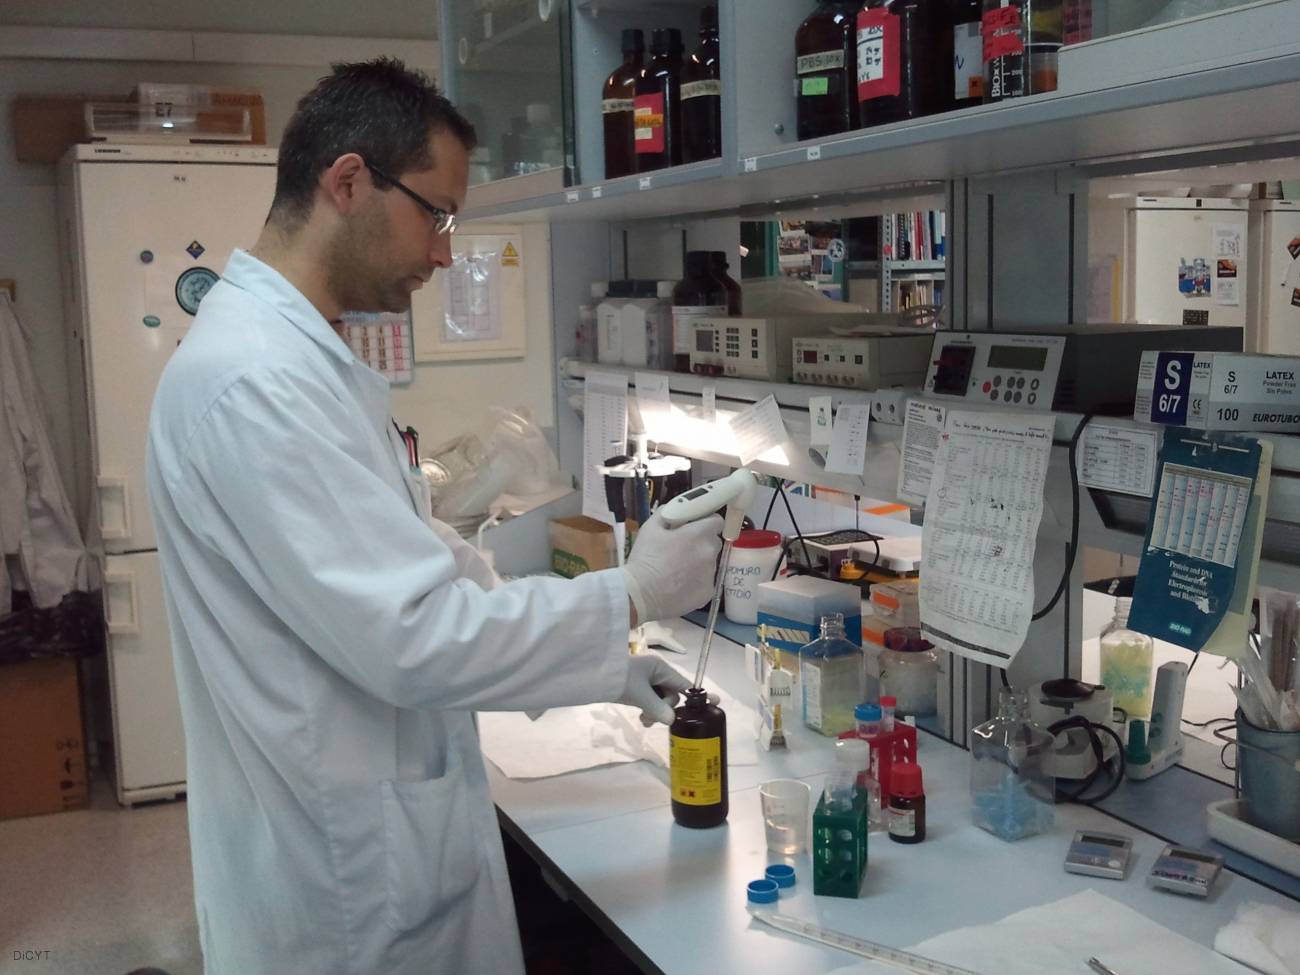 El laboratorio del IBGM de Valladolid dirigido por María Luis Nieto ha comprobado la eficacia de este componente frente a enfermedades de origen inflamatorio y ha presentado dos patentes